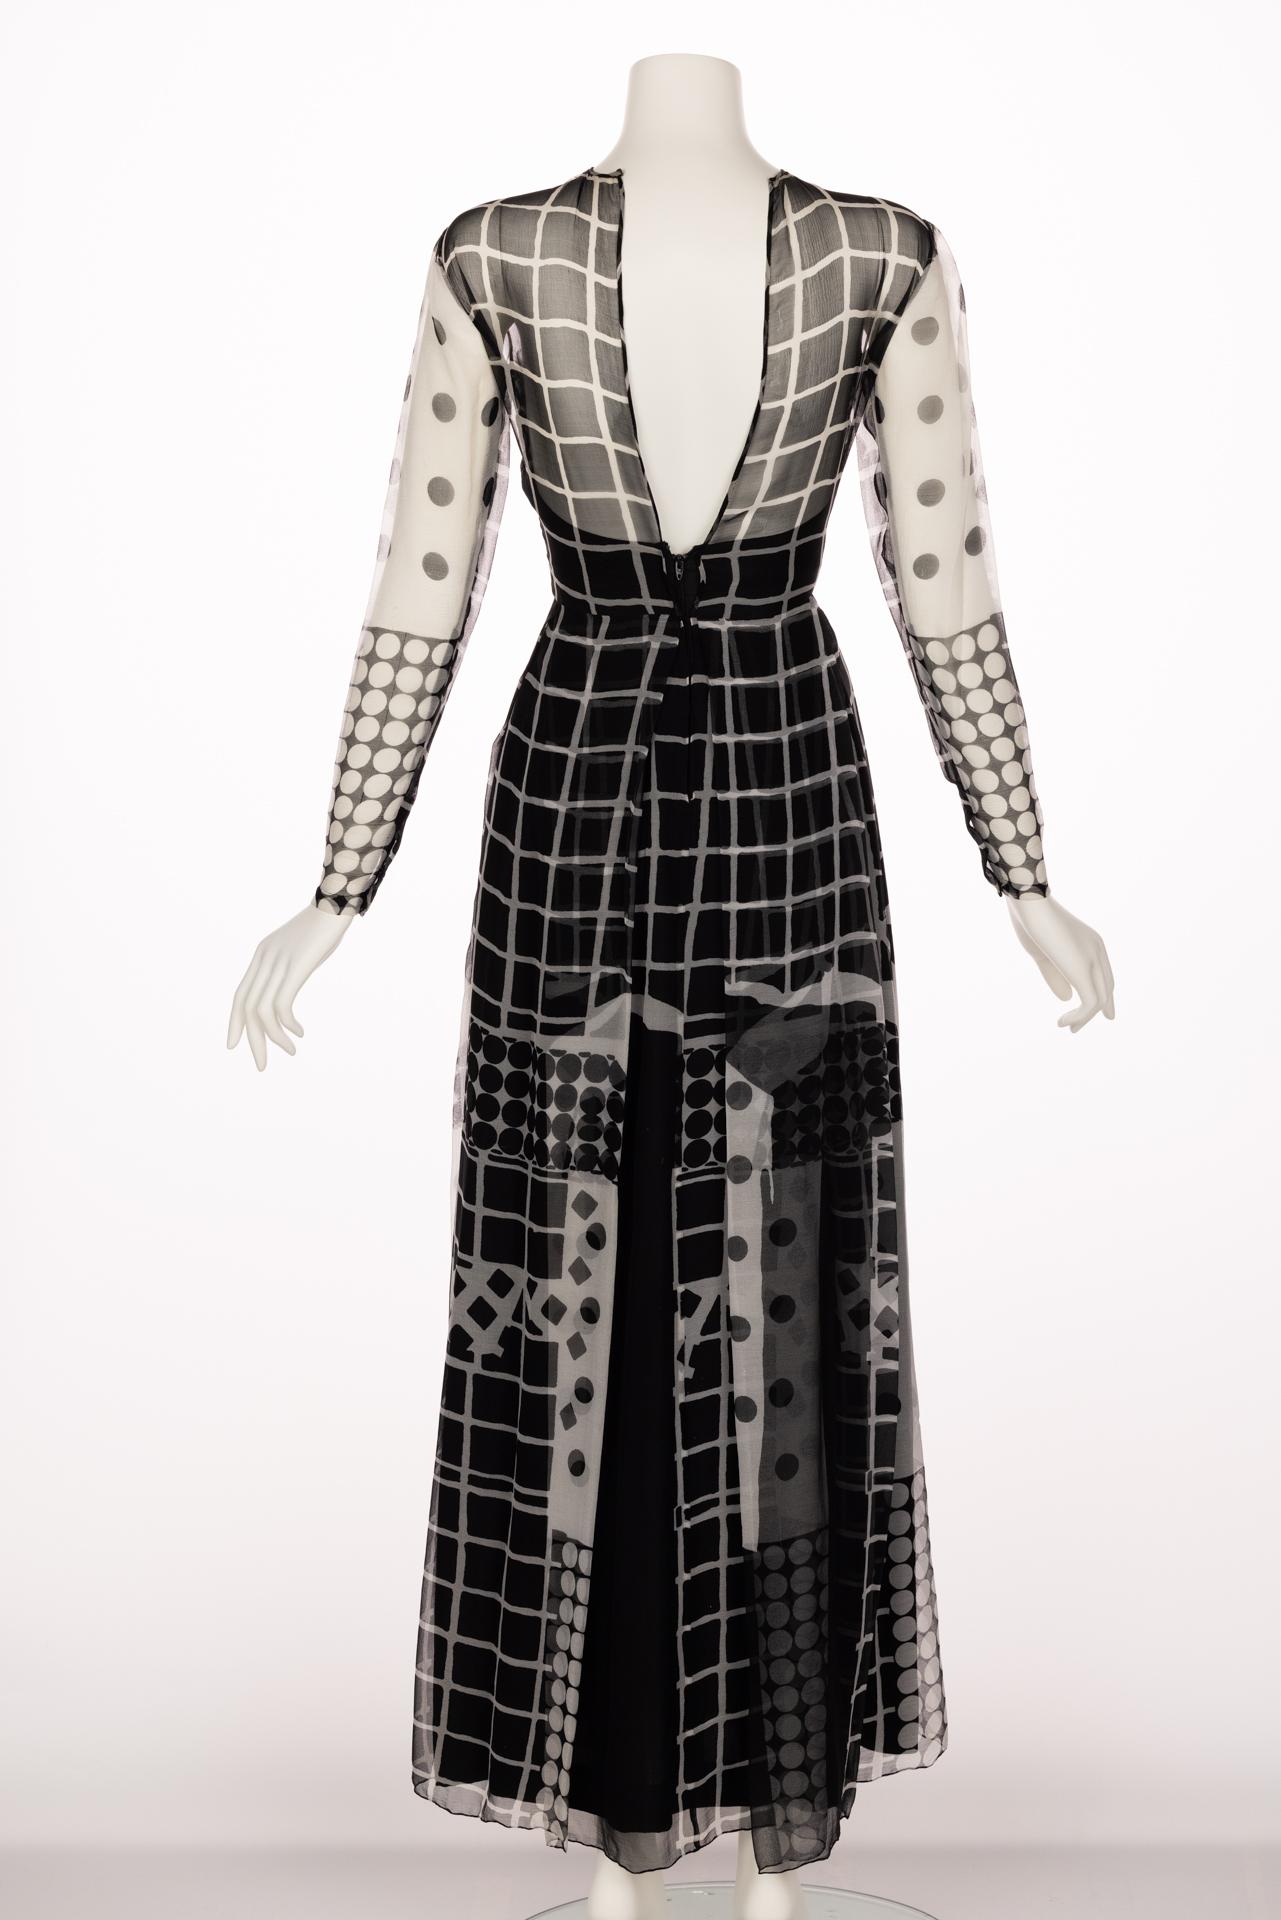 Black Saz by Surjit & Adarsh Gill Silk Cut Out Dress Dress, 1970s For Sale